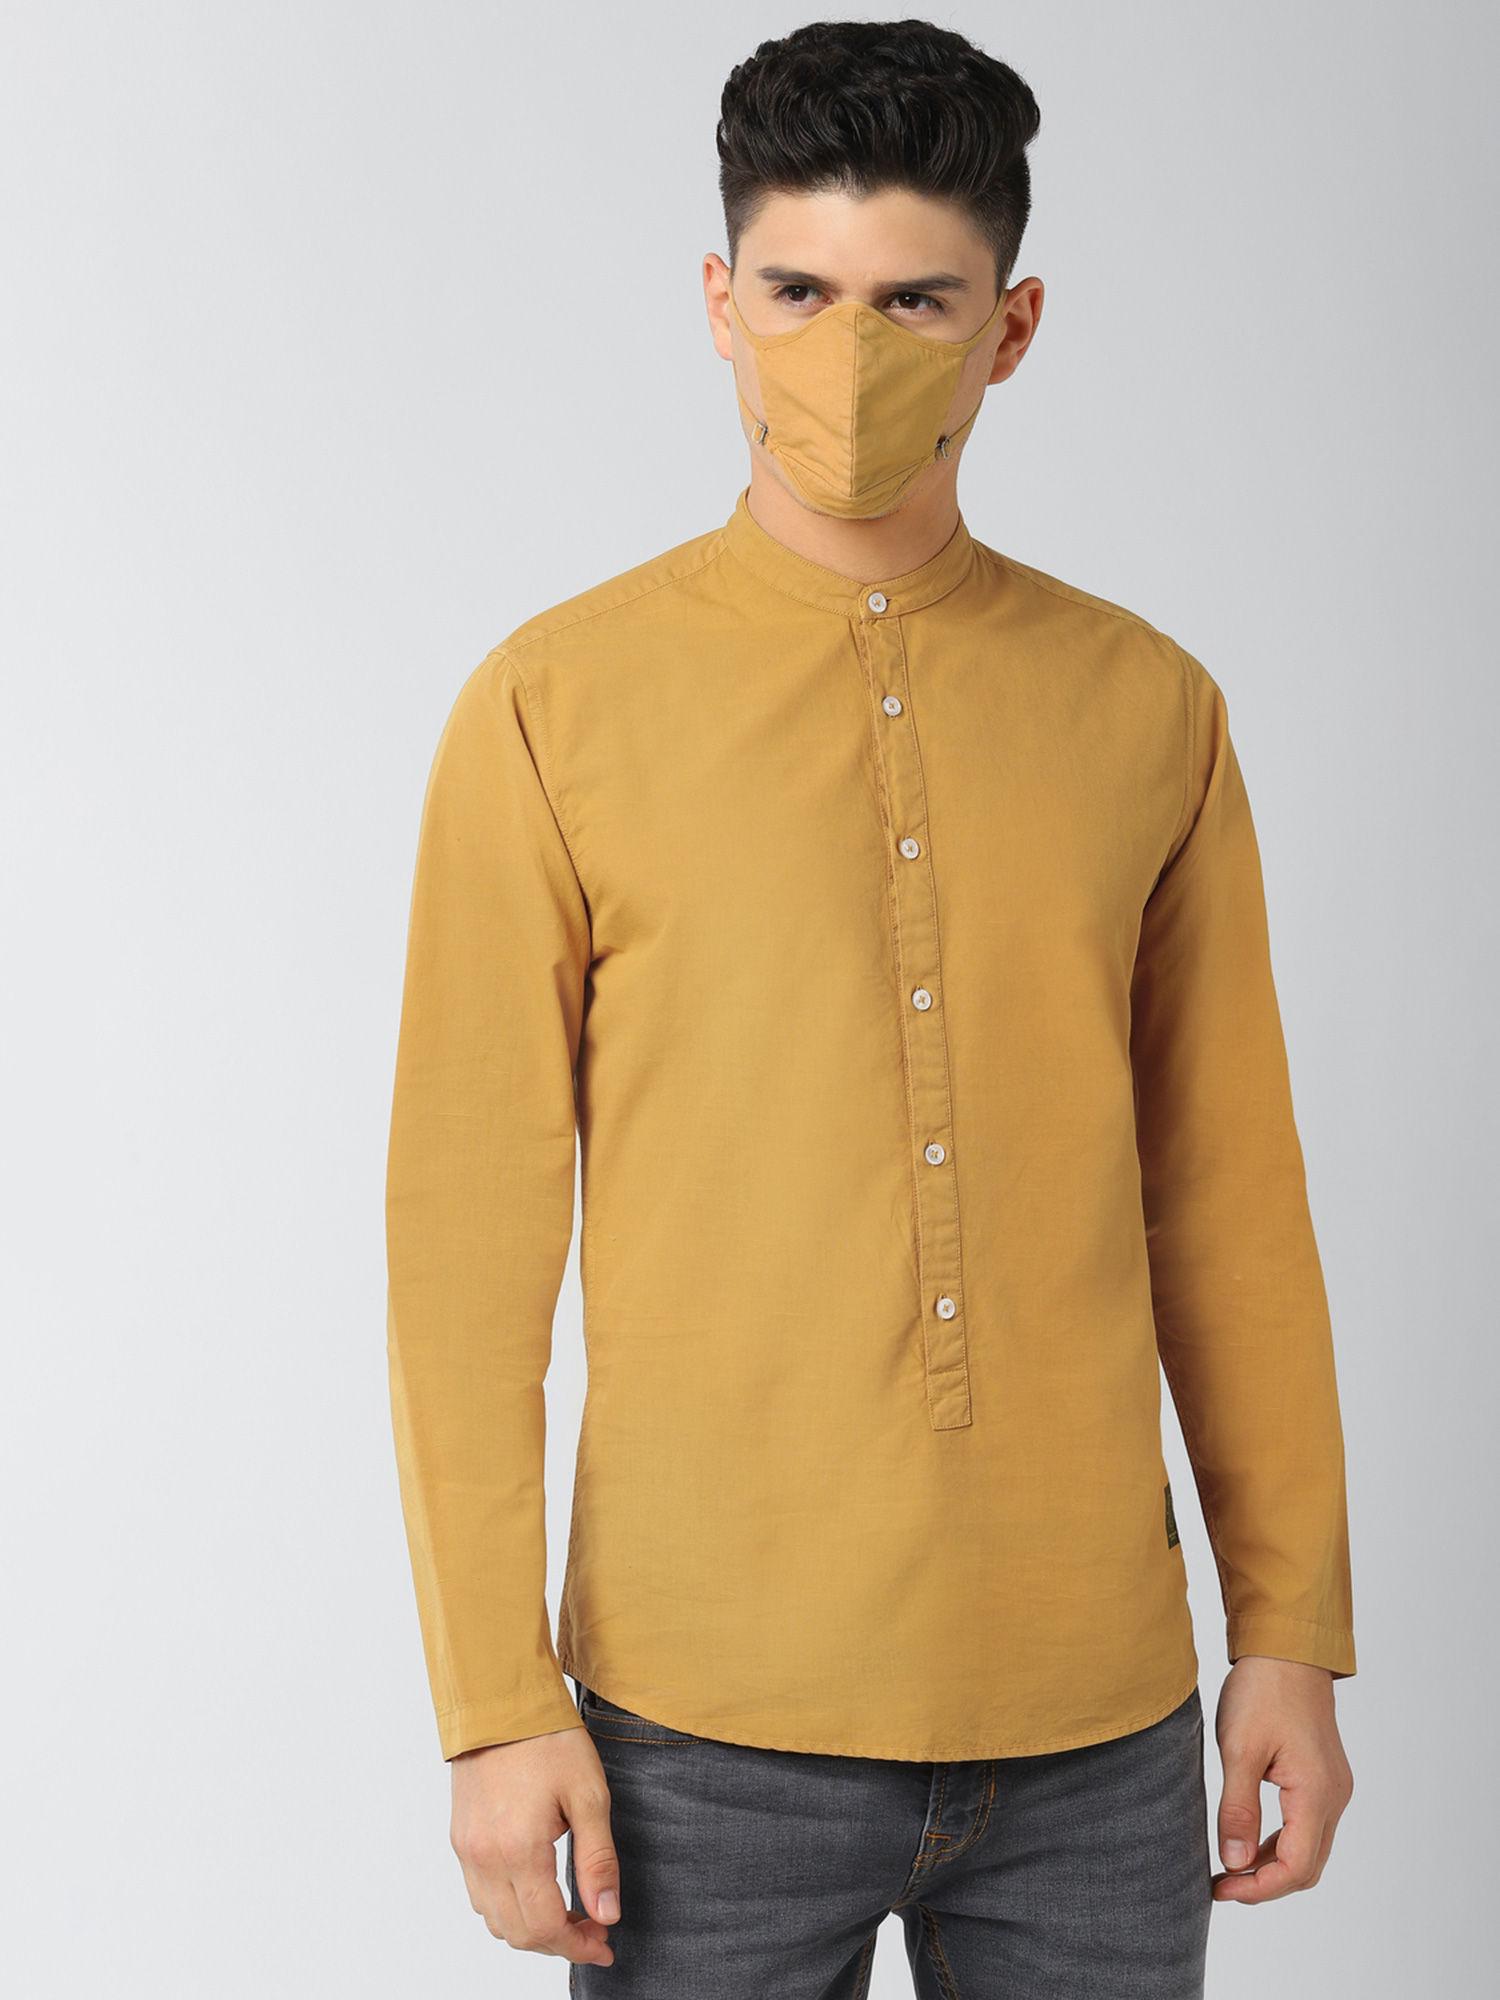 peter-england-yellow-shirt-and-mask